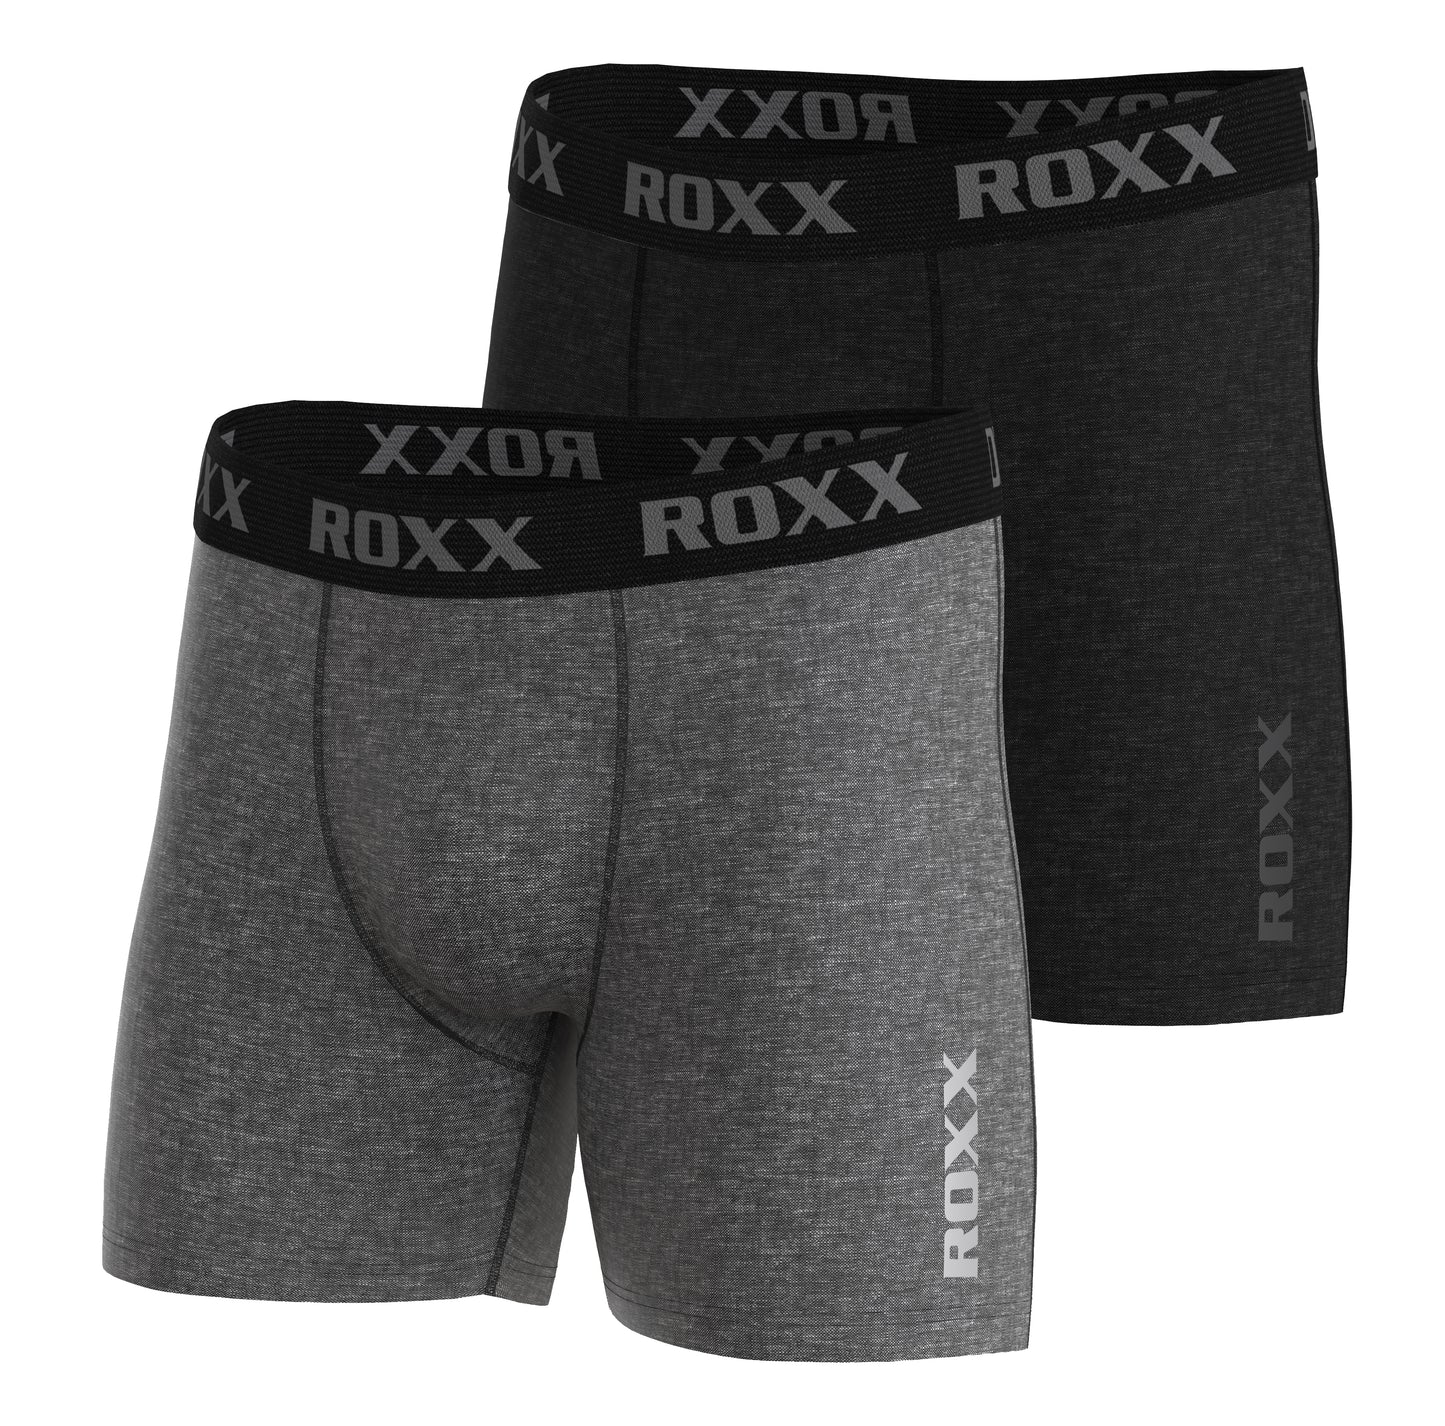 Men's Cotton Boxer Shorts Trunks Briefs Pants, Underwear Cotton underpants